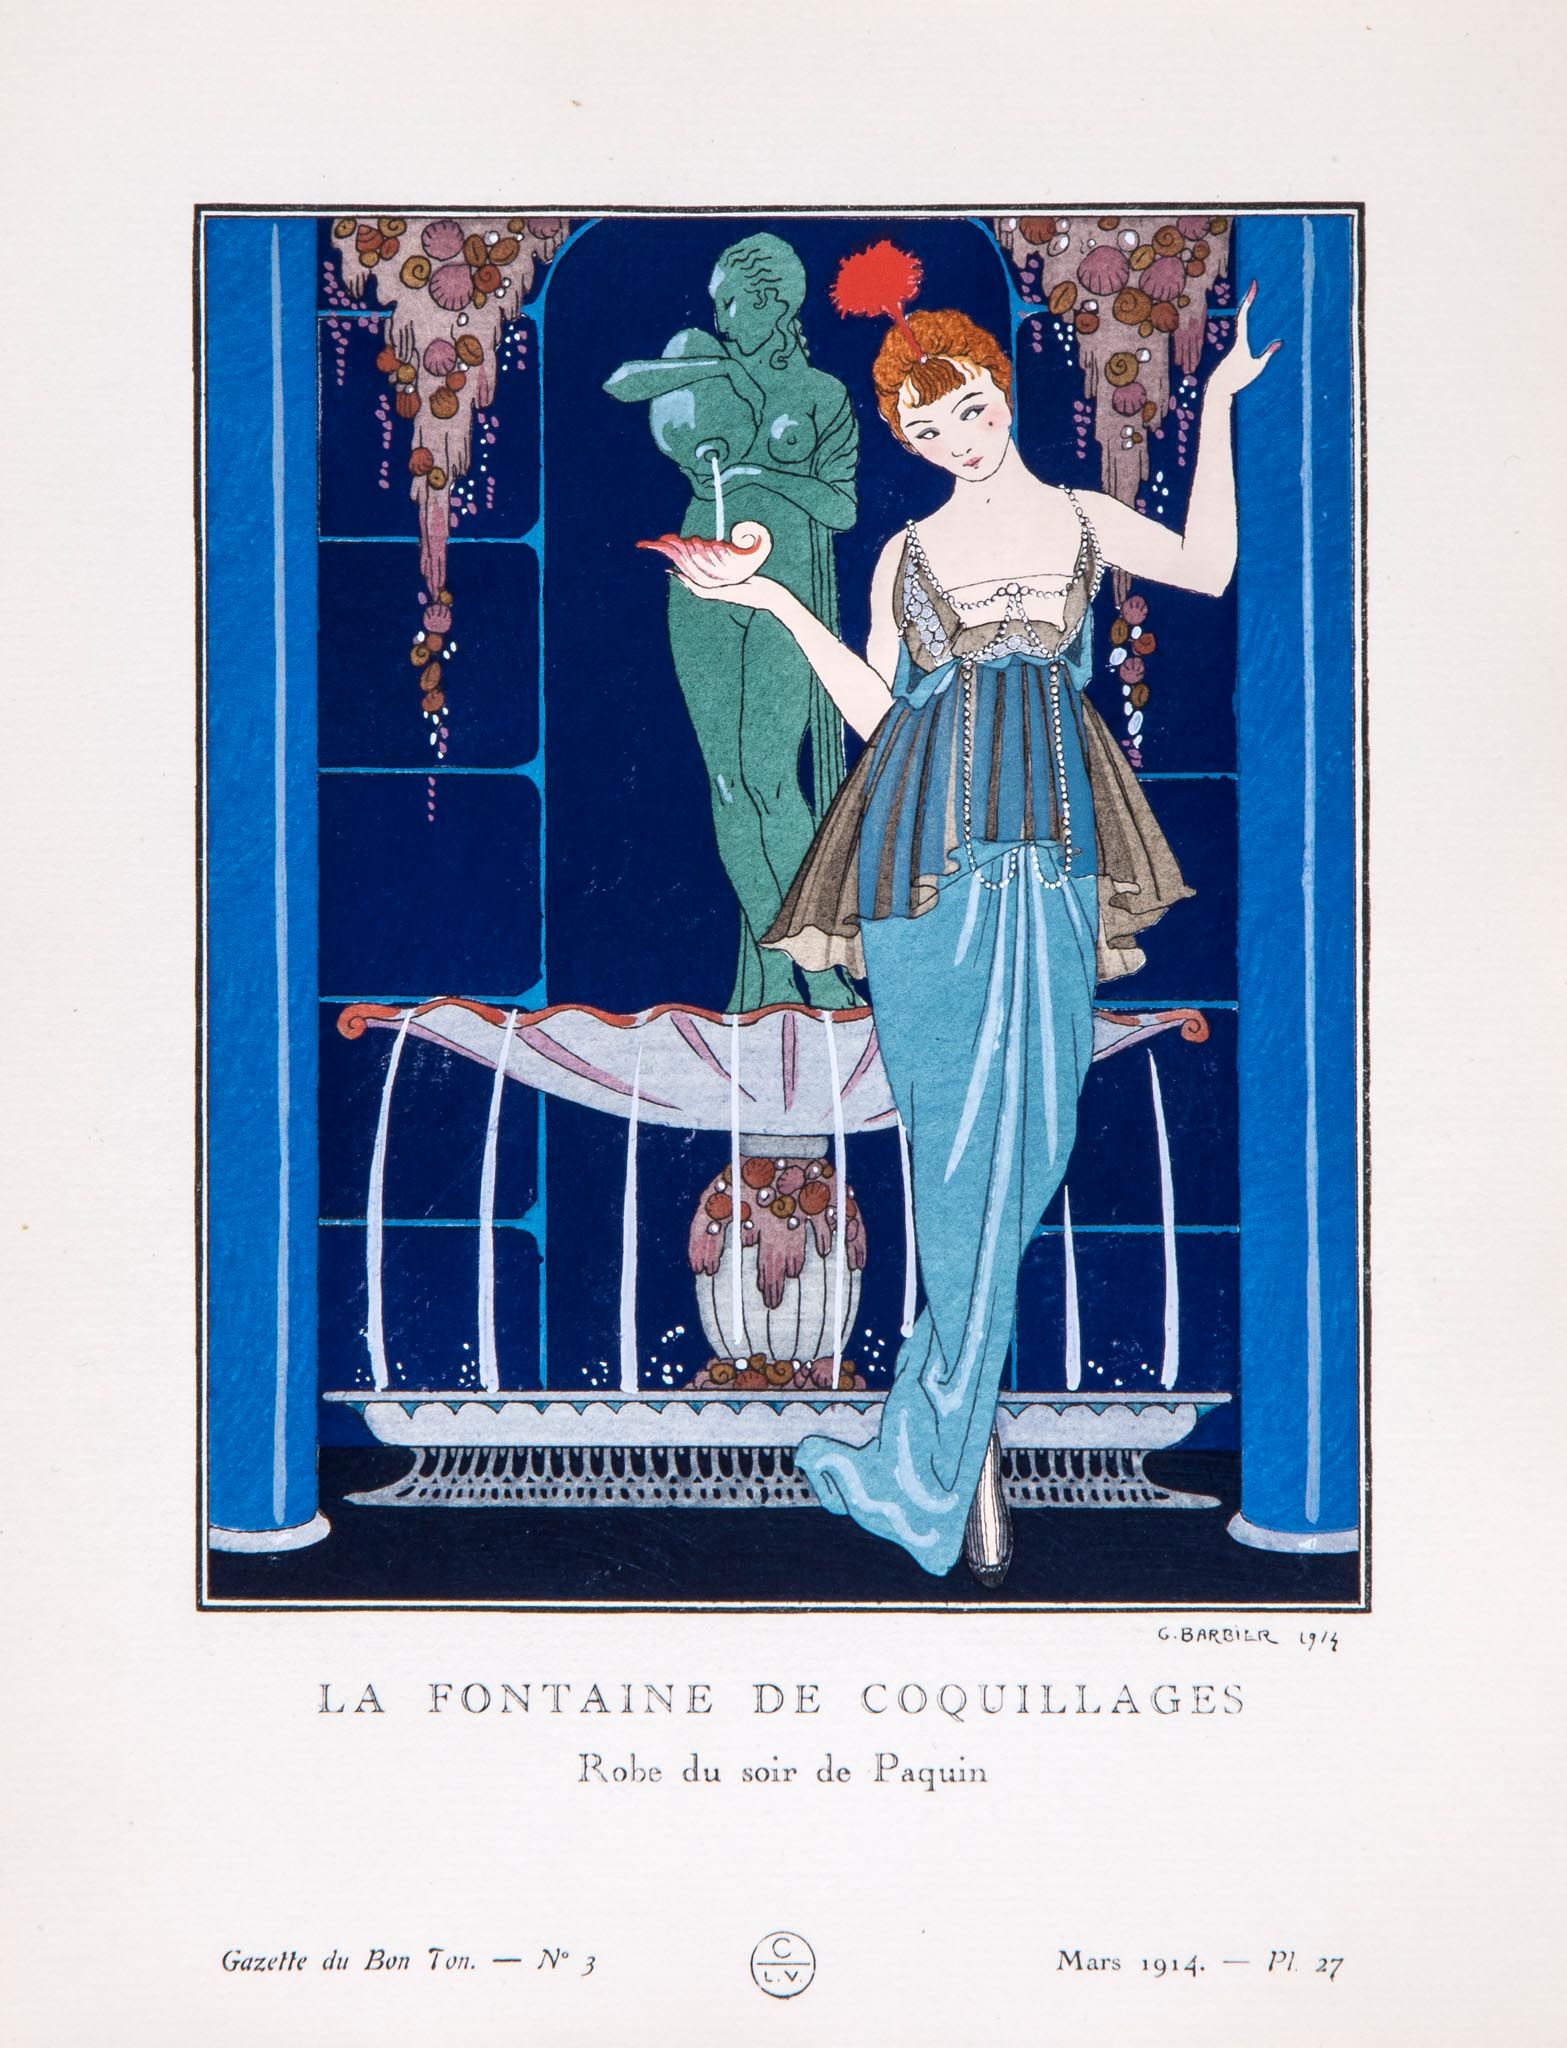 [Gazette du Bon Ton], An incomplete run, 18 vol. Comprising nos. 1-4 and 7 (1914), nos. 1-6, 8,